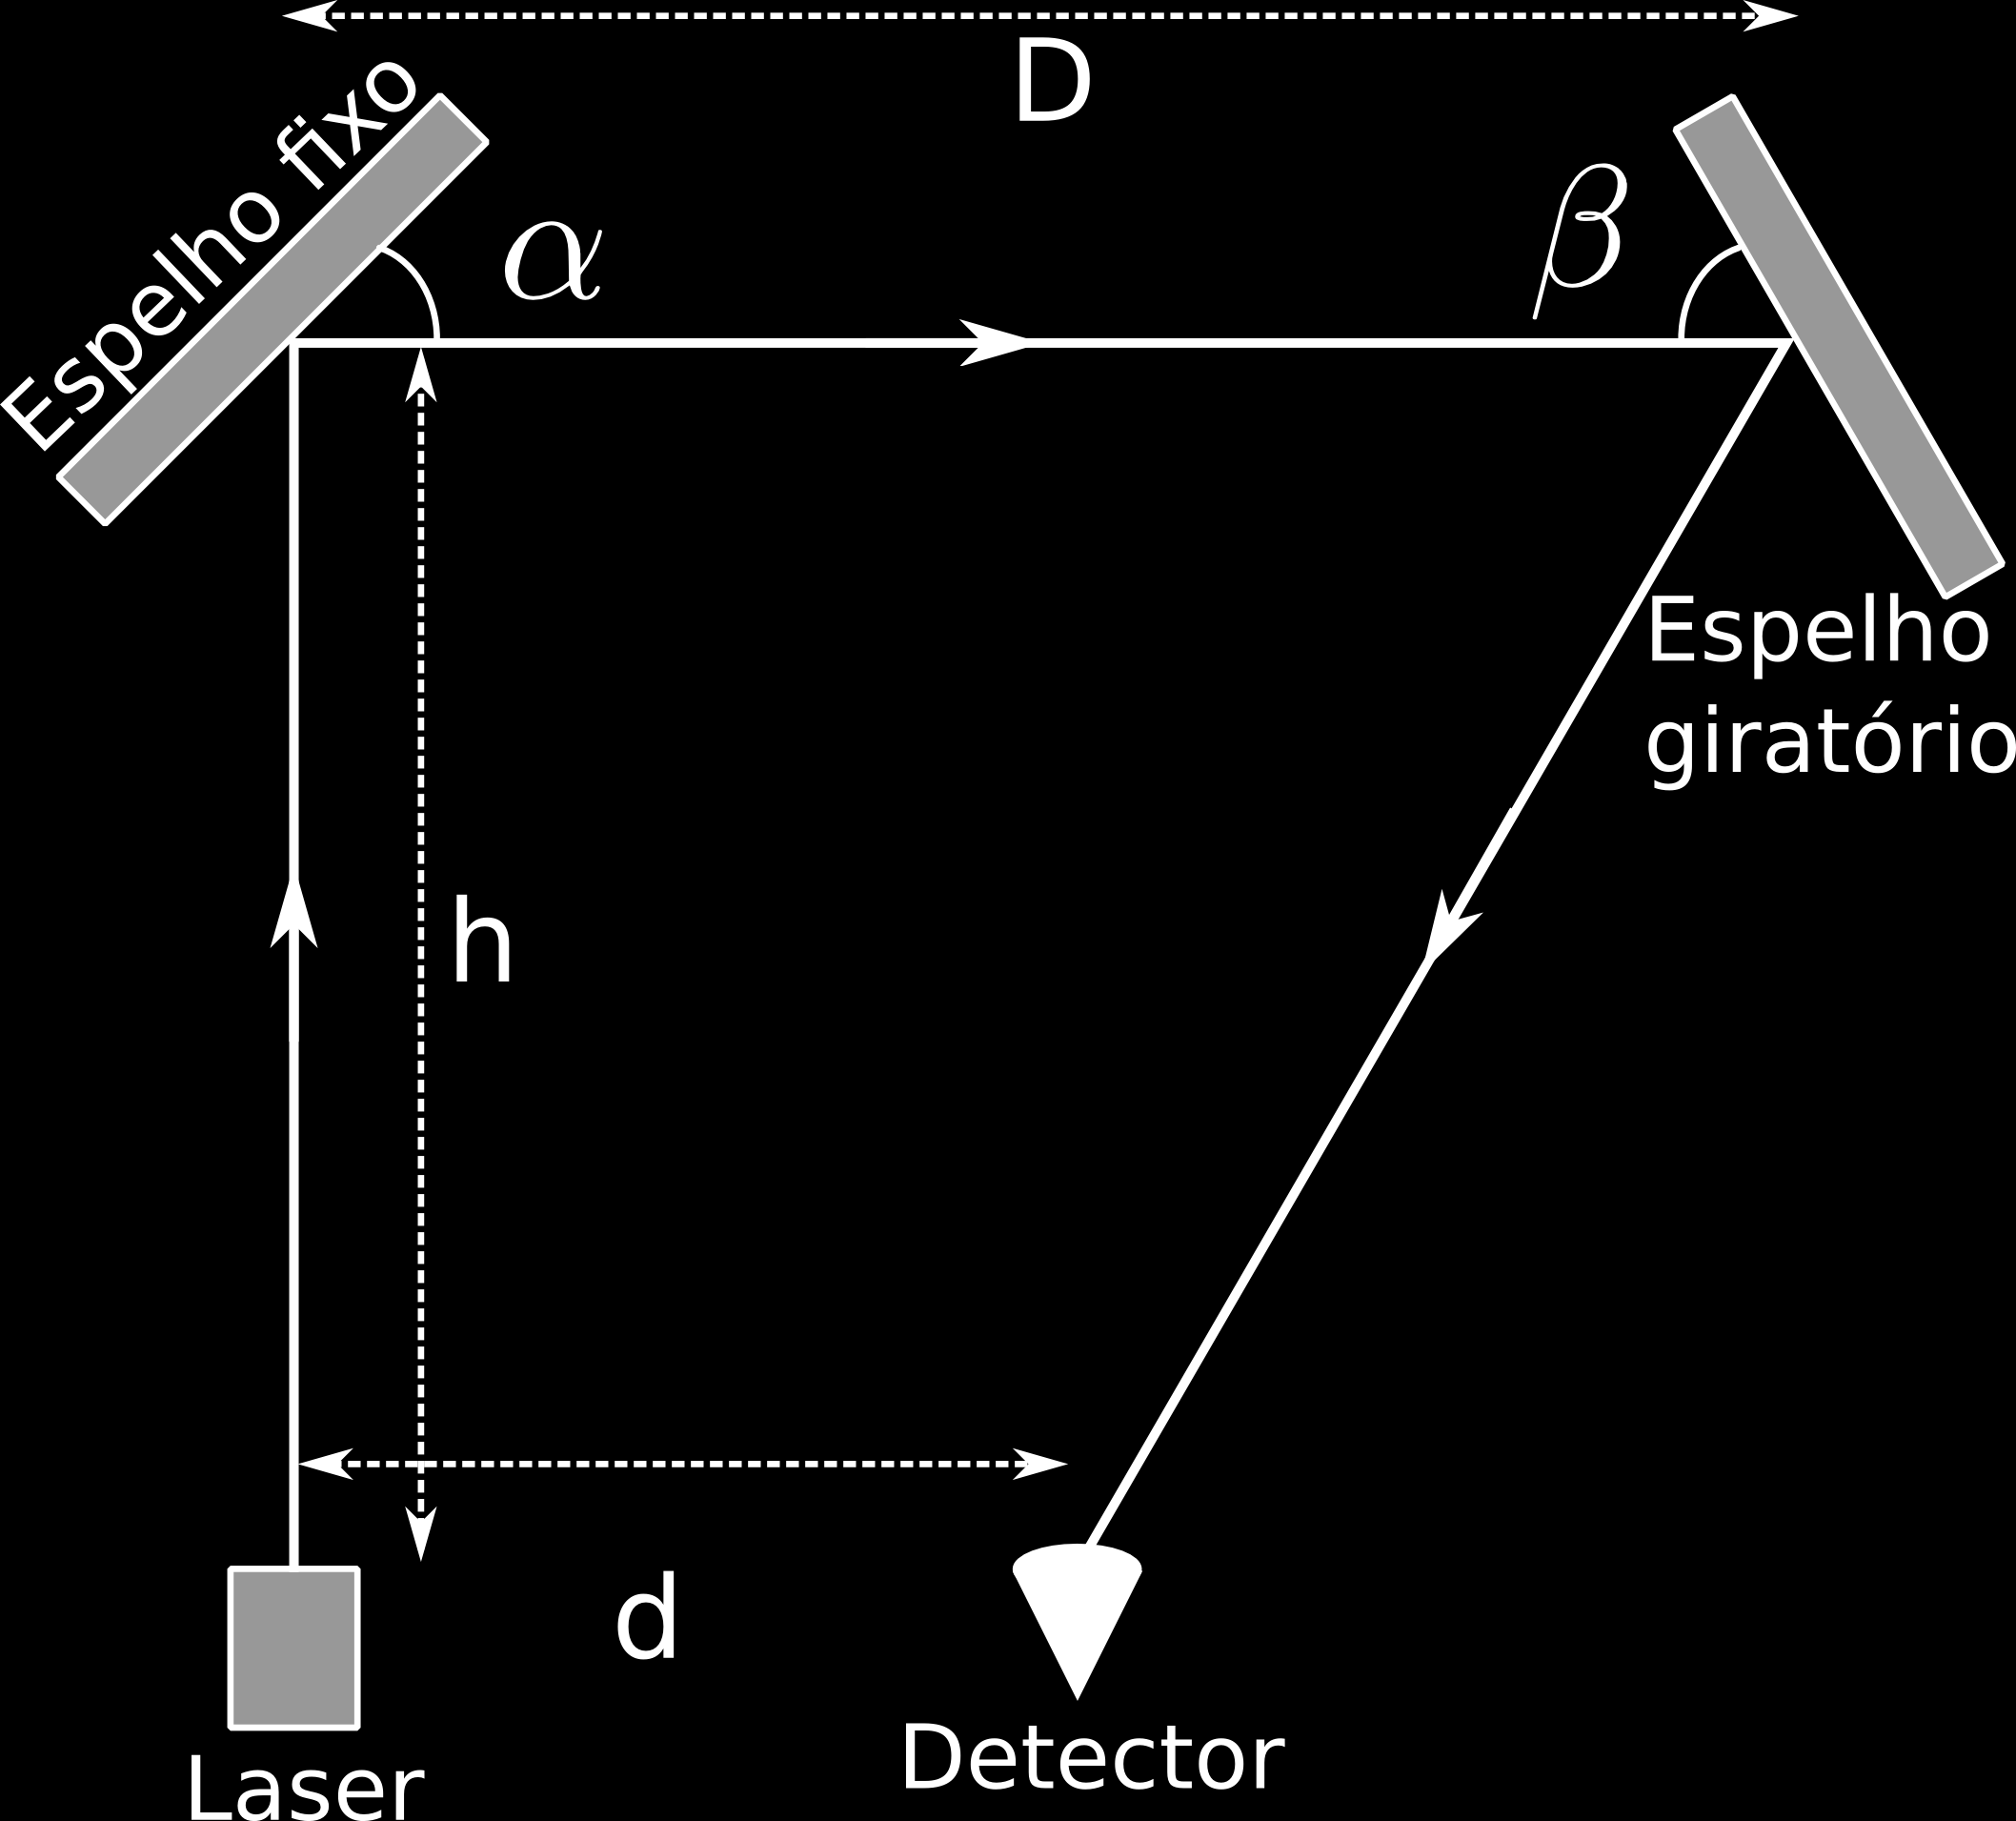 UFG/CS PROCESSO SELETIVO-2014-1 QUESTÃO 49 TIPO-3 A figura a seguir representa um dispositivo óptico constituído por um laser, um espelho fixo, um espelho giratório e um detector.